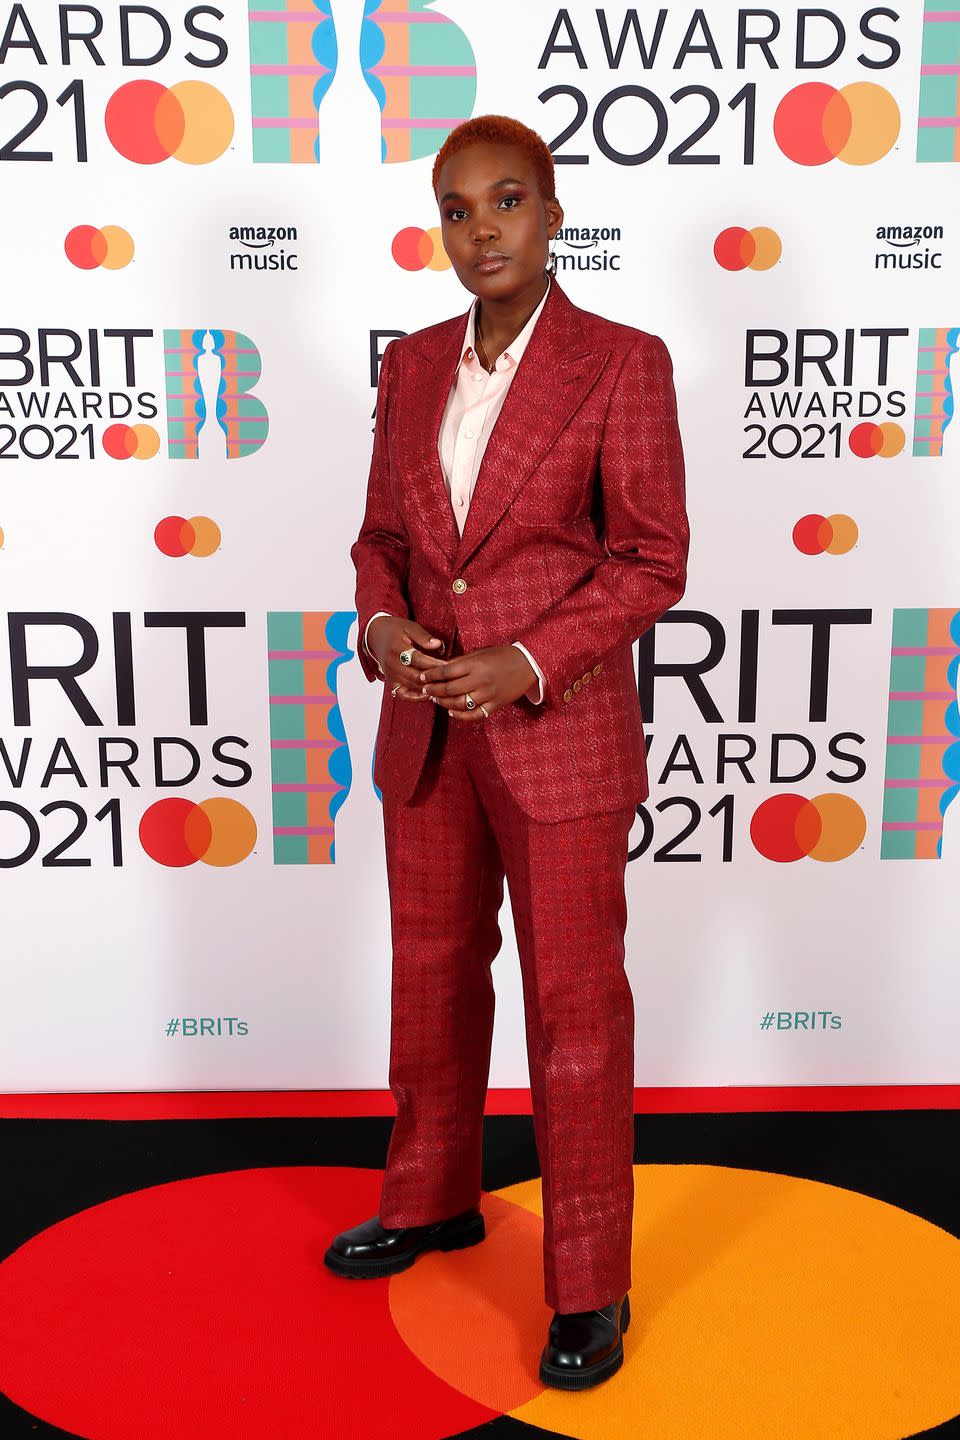 2021 BRIT Awards: Best Dressed - Arlo Parks